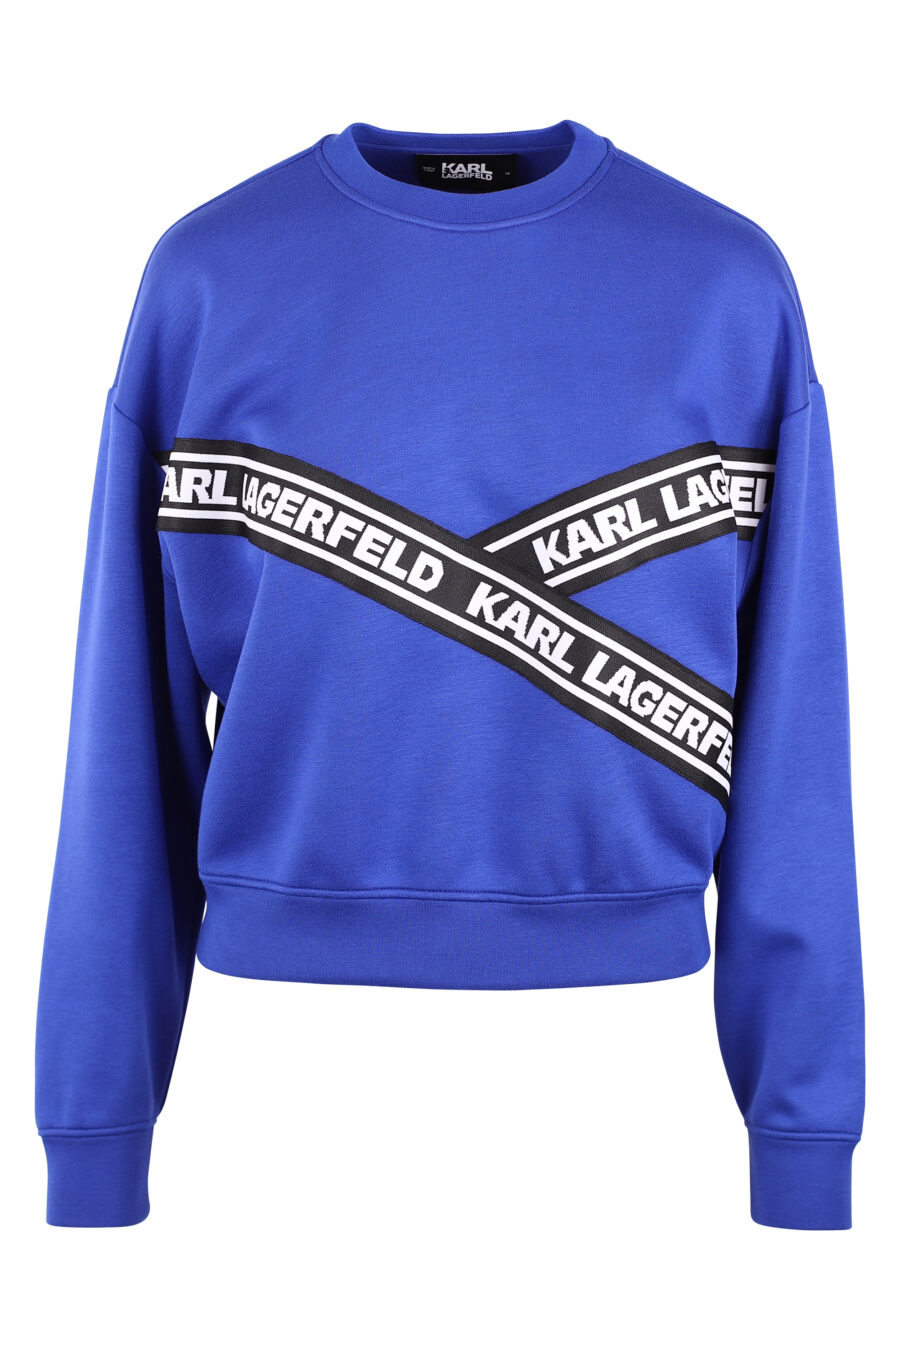 Blaues Sweatshirt mit Kreuzschleifenlogo - IMG 6148